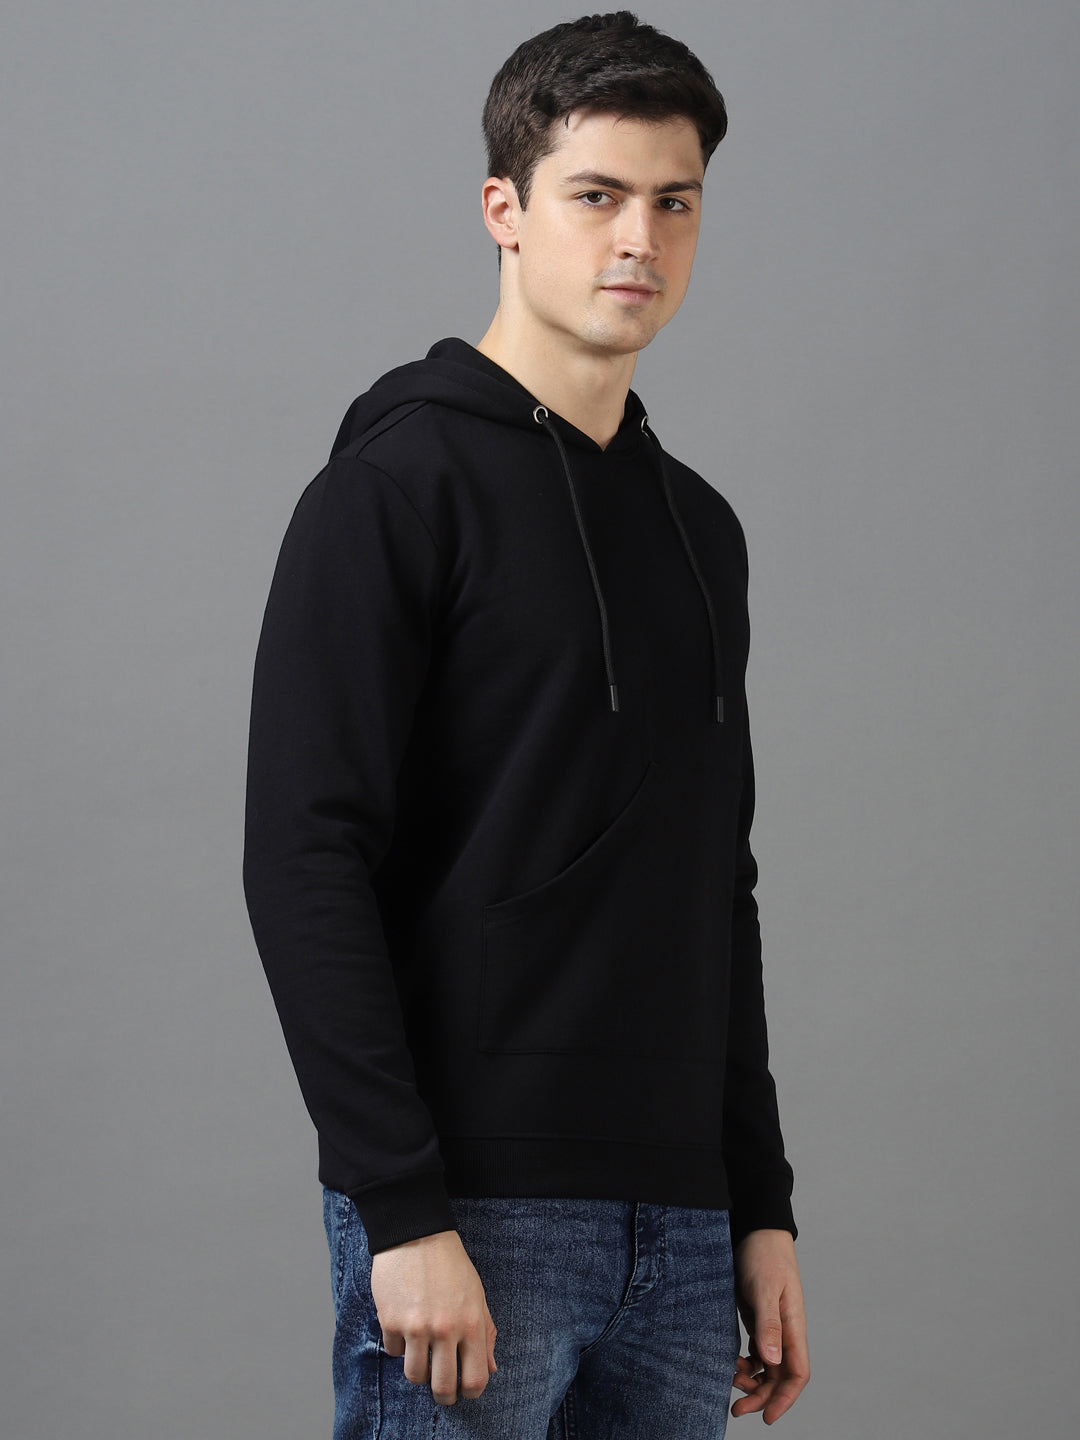 Men's Black Cotton Solid Hooded Neck Sweatshirt